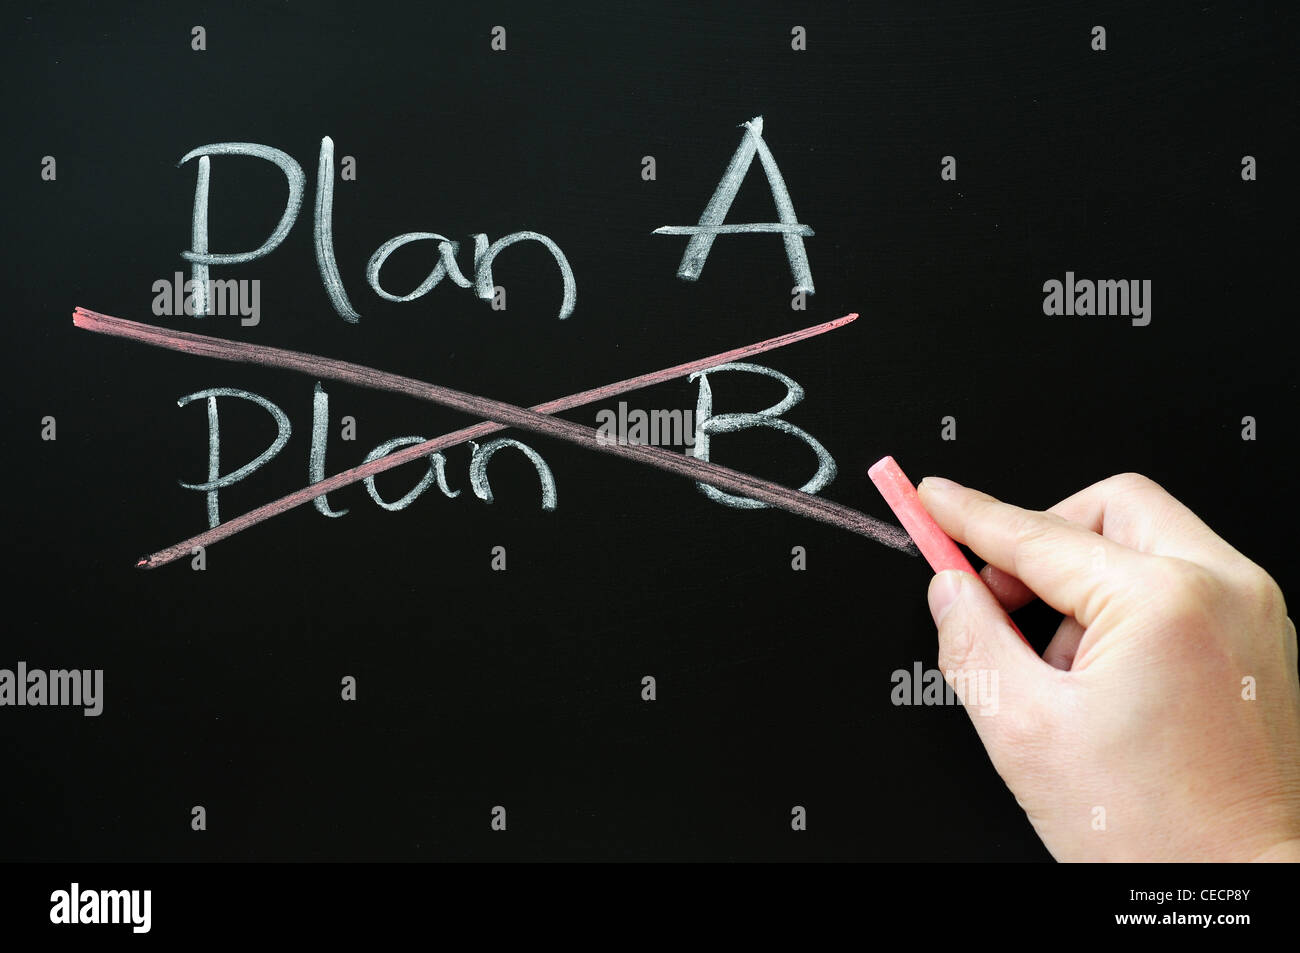 Plan-Strategie Planung Entscheidungen Buchstabe B Buchstabe A Tafel Sprüche Geschäftskonzepte schreiben schwarze Hand Kreide Holding zu ändern Stockfoto